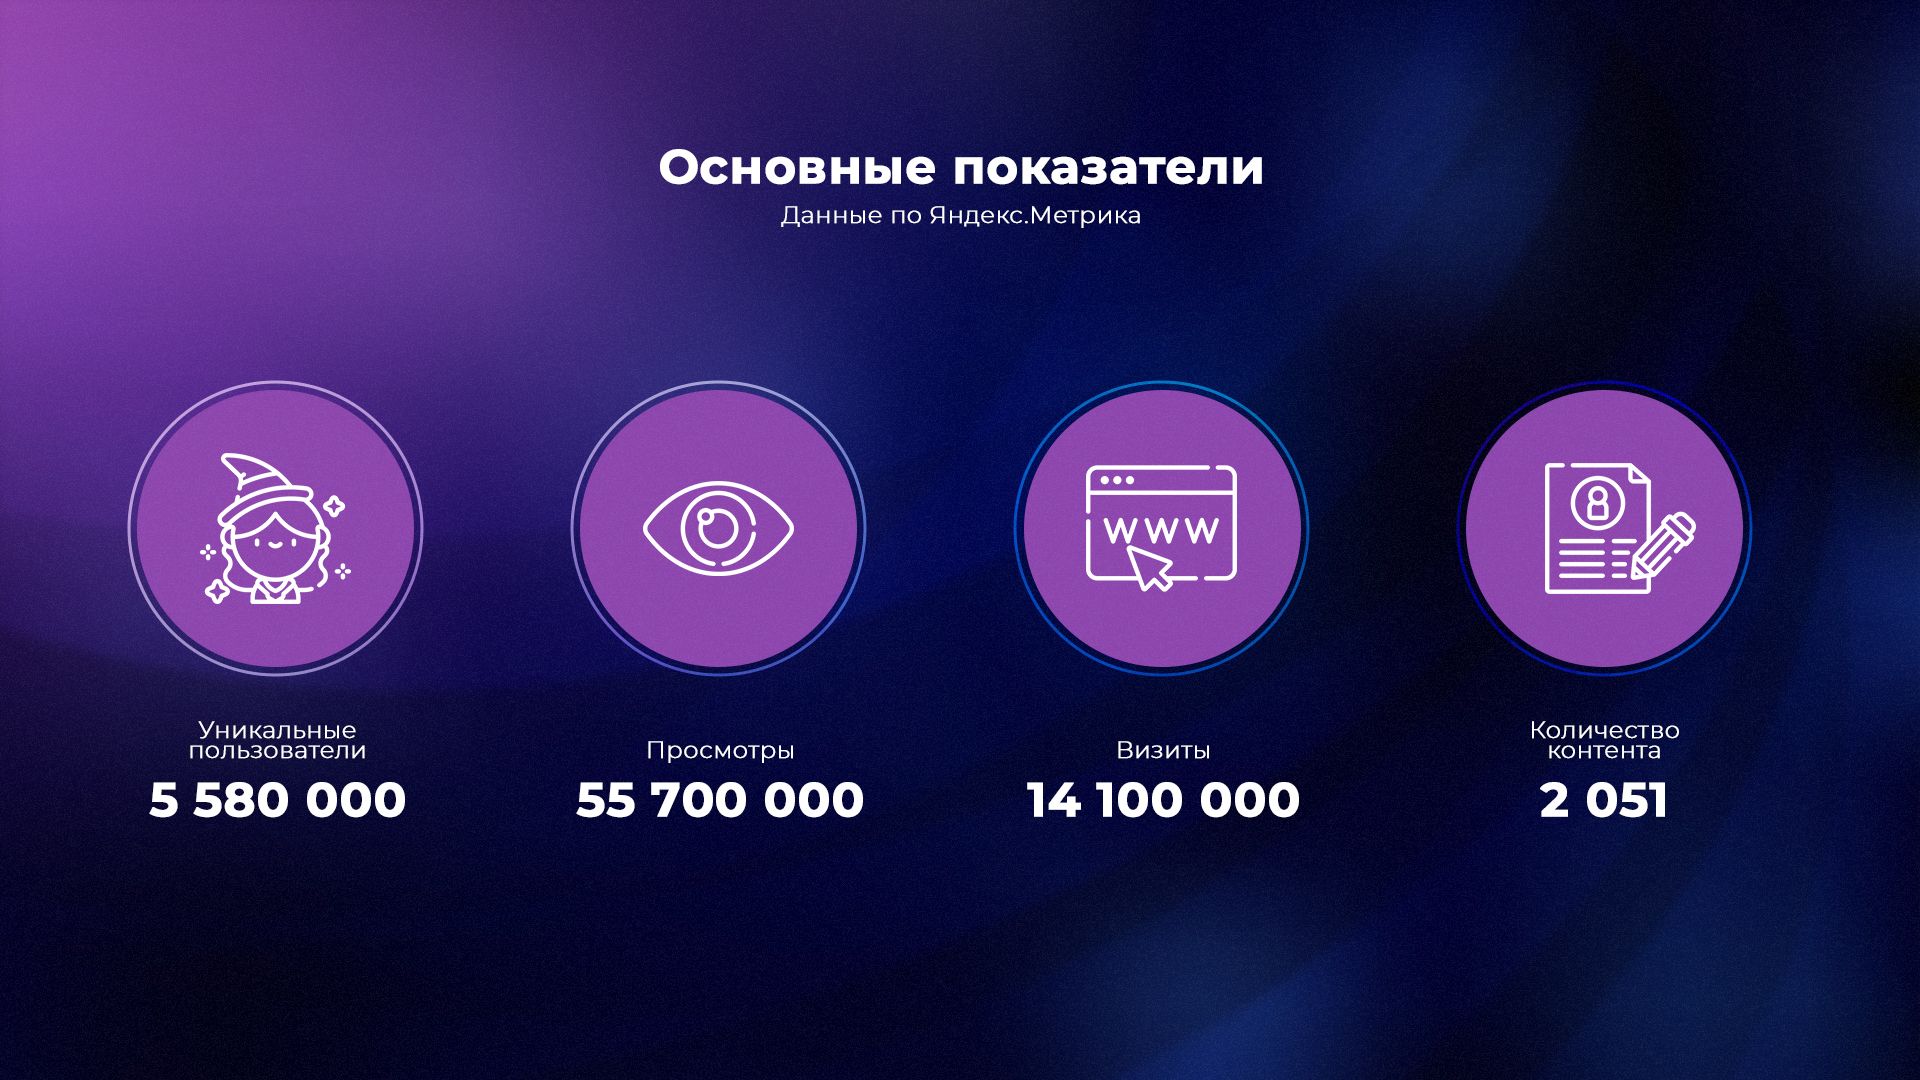 Статистика Cybersport.ru за март